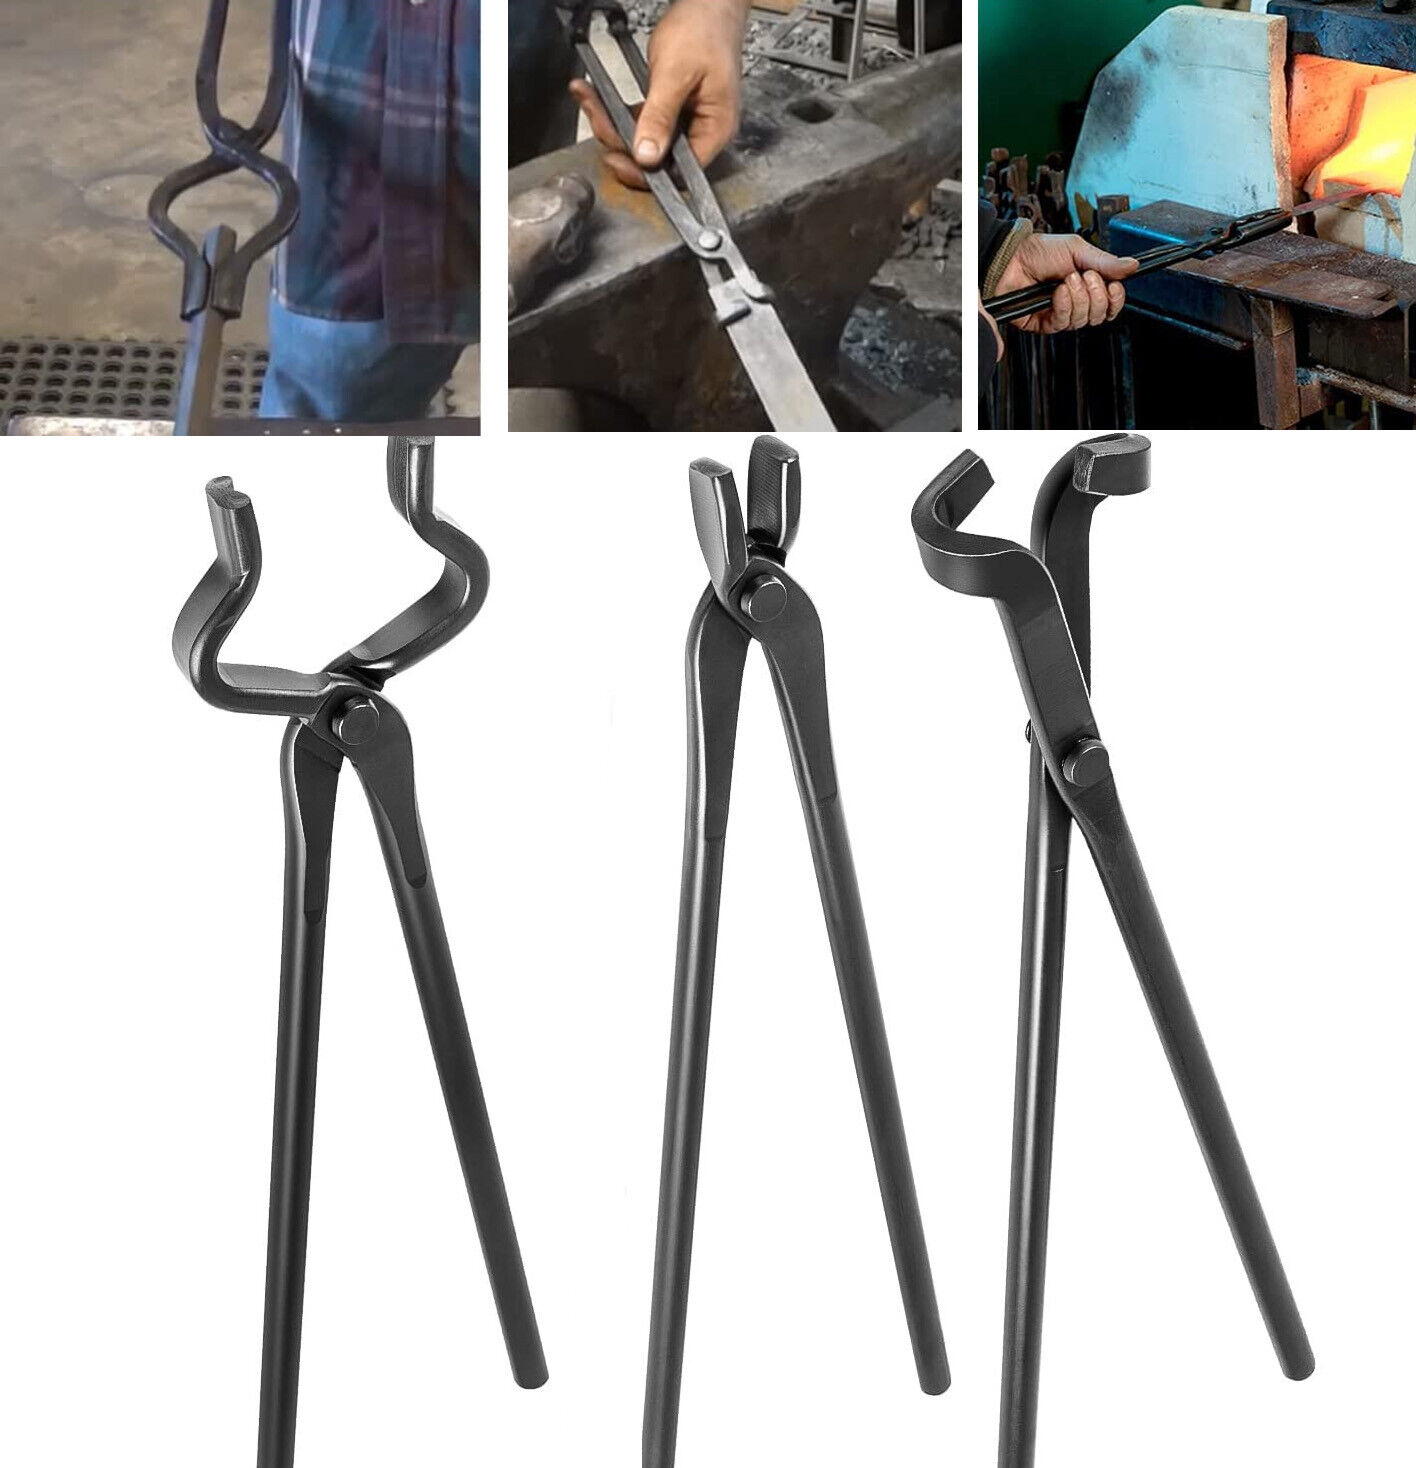 Knife Making Tongs Set Tools Blacksmith Bladesmith Tong Vise Anvil Forge 3 PCS